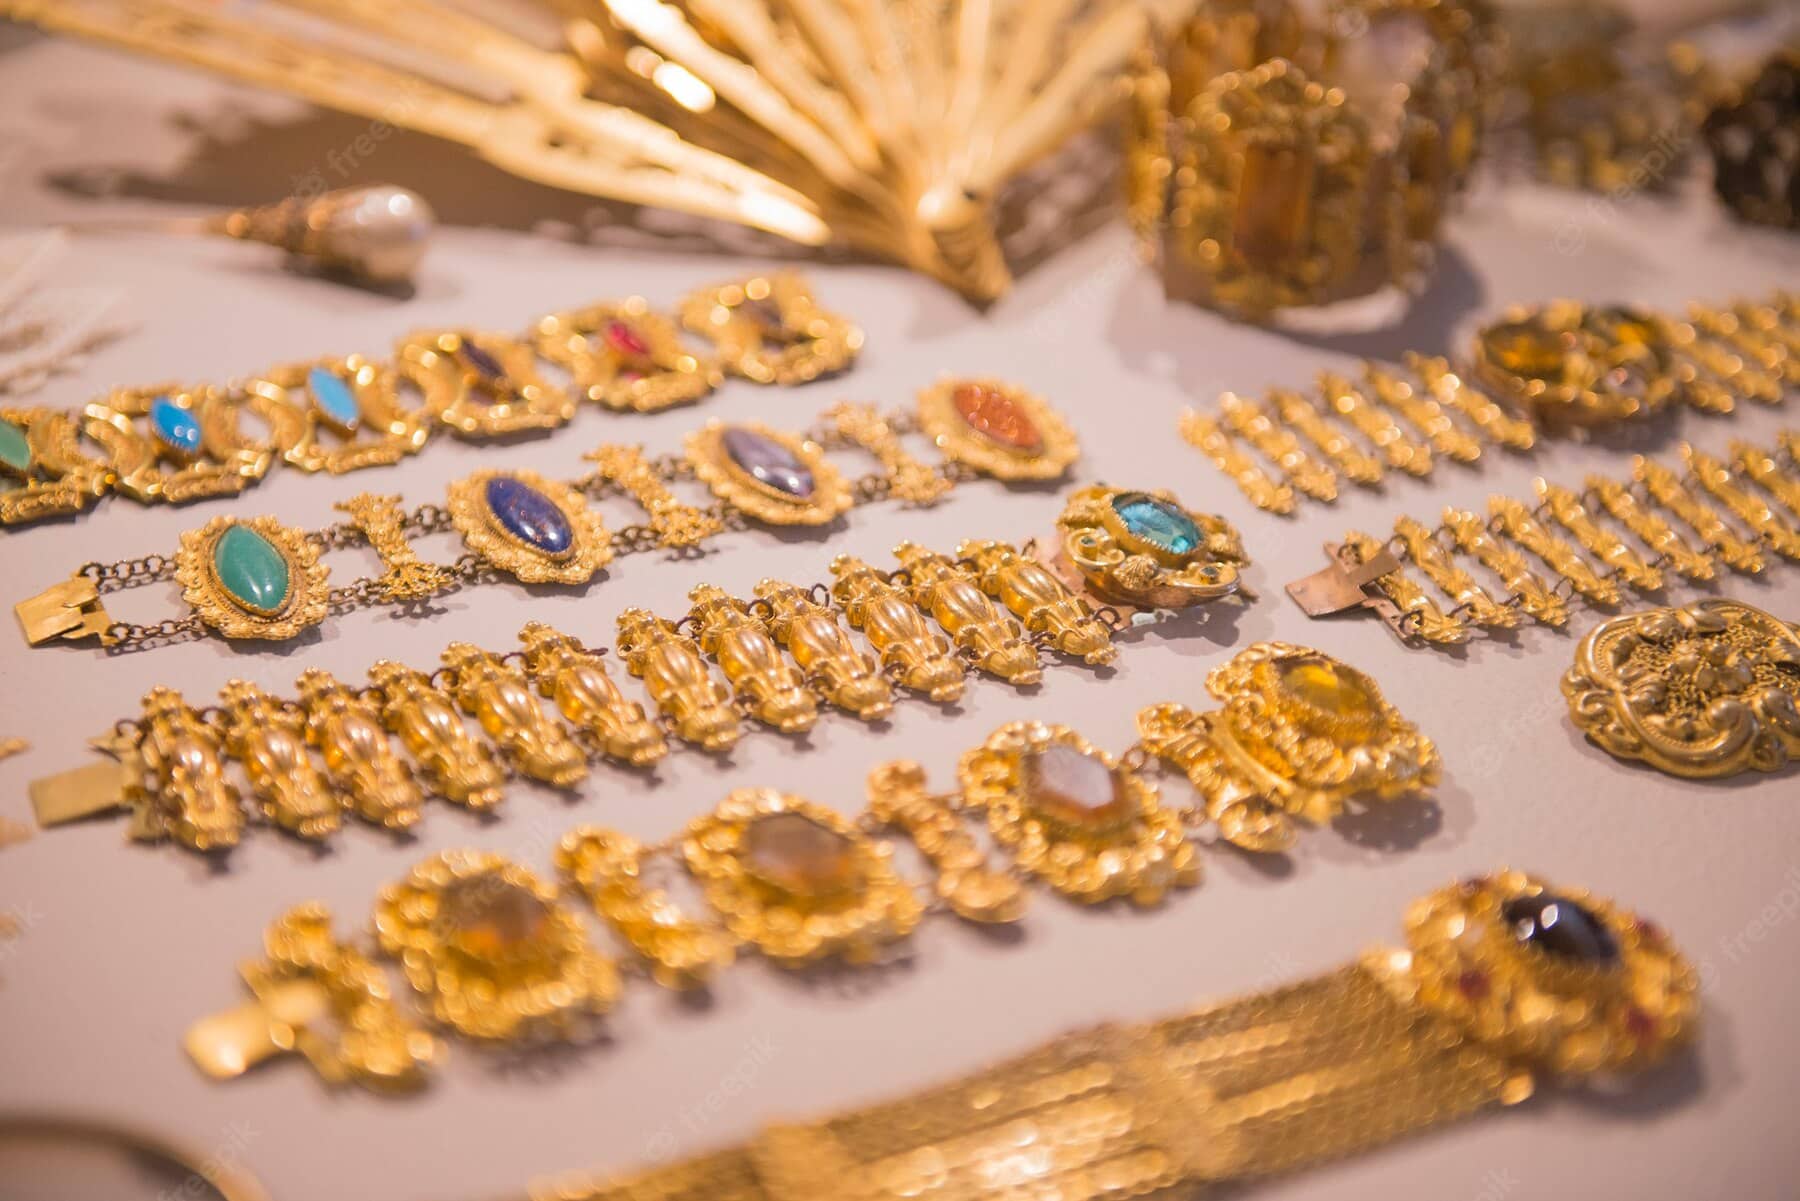 أسئلة شائعة عن الذهب والمجوهرات ومعلومات عن الذهب